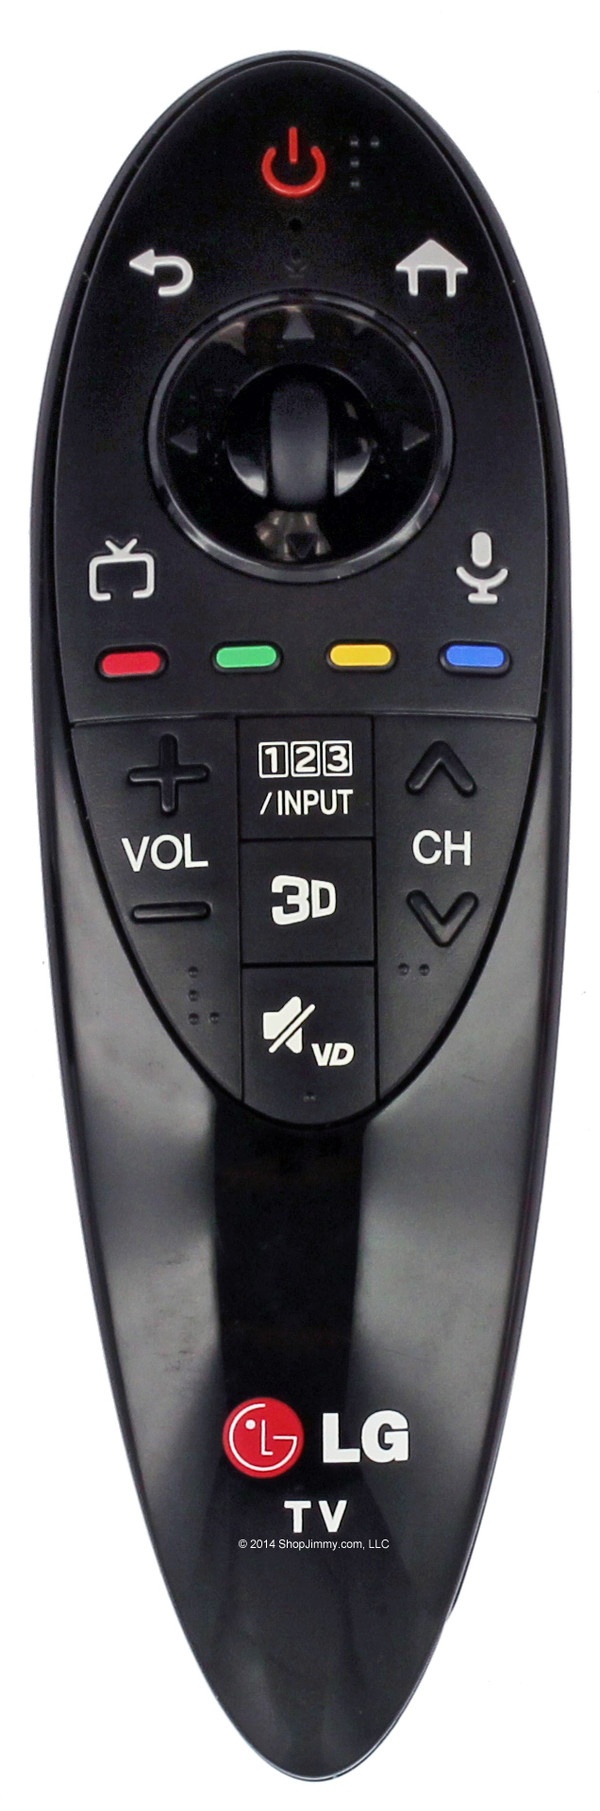 LG AGF77238901 (AN-MR500G, AN-MR500) Magic Remote